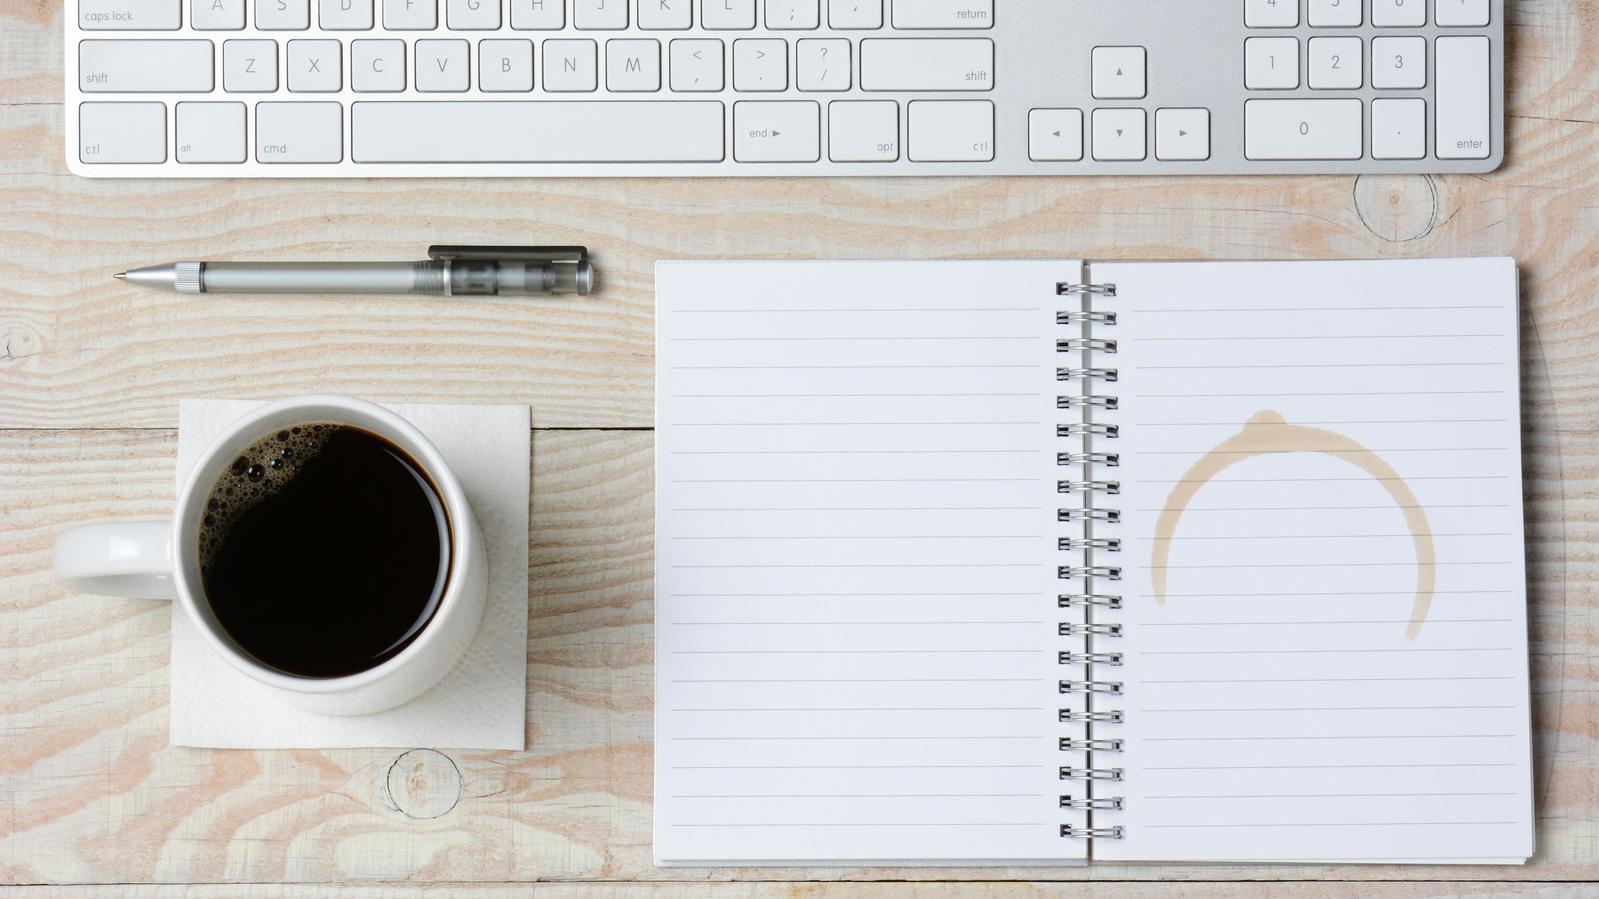 Draufsicht auf einen Schreibtisch, auf dem eine Kaffeetasse, ein Notizblock und eine Tastatur liegen.